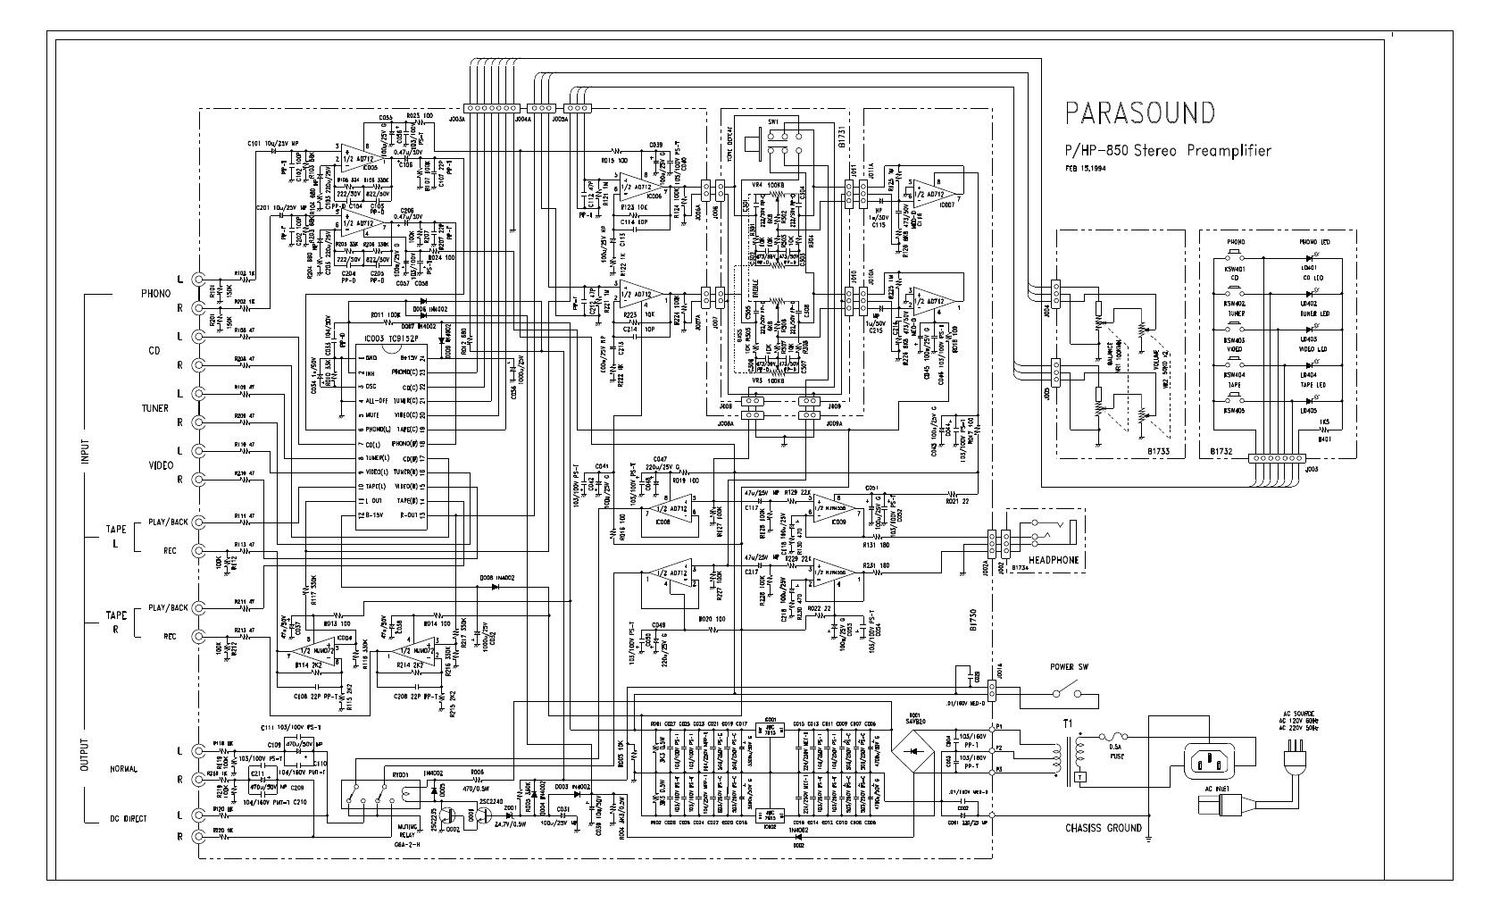 parasound php 850 schematic